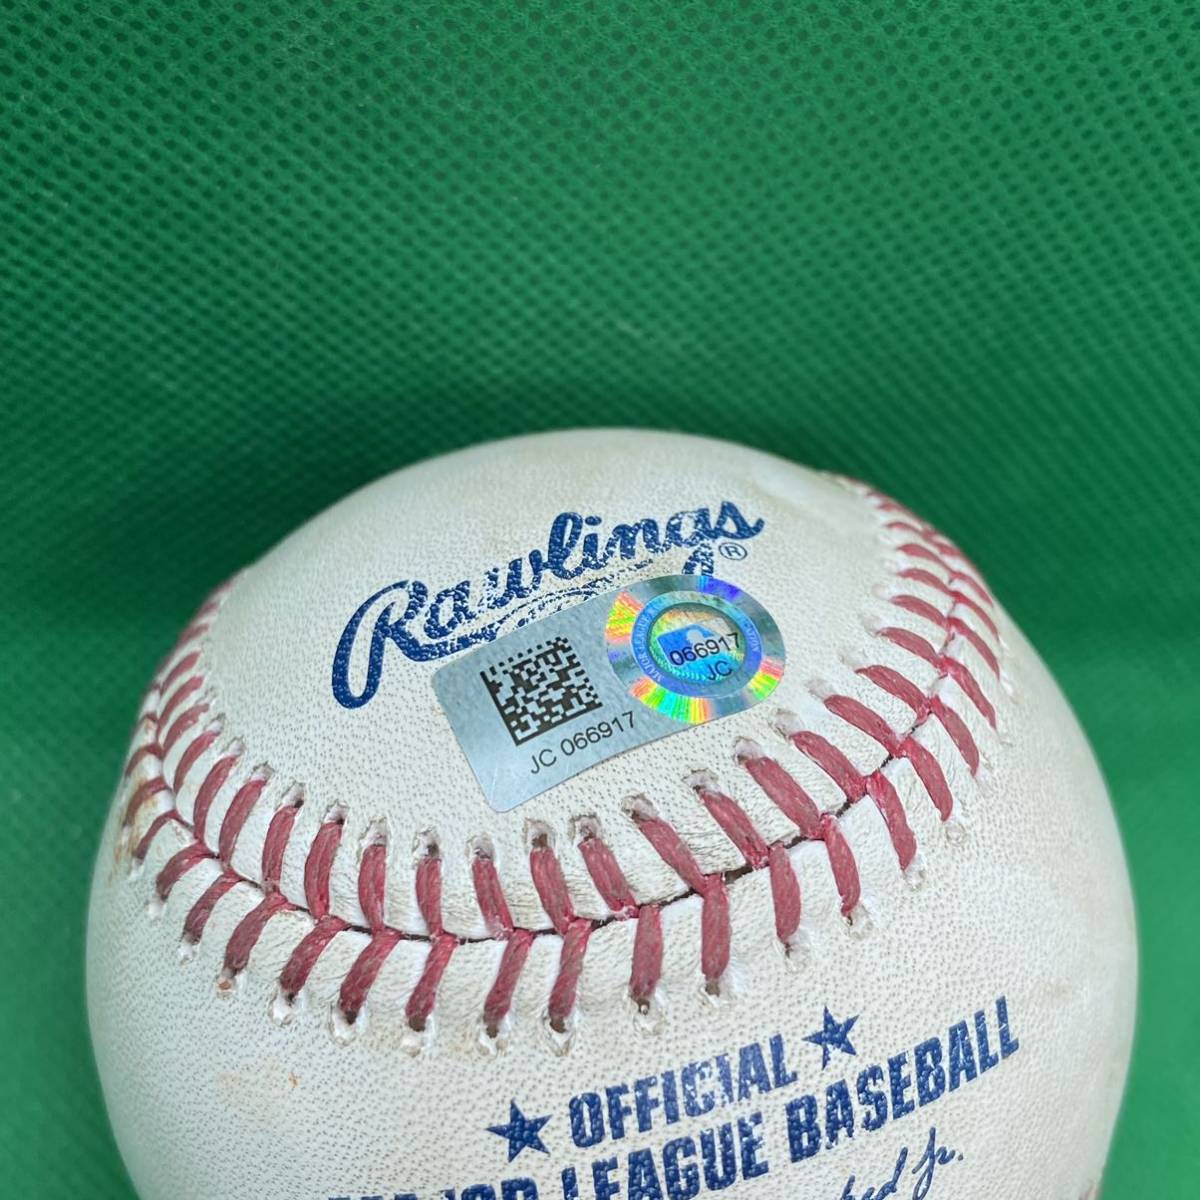 超レア アストロズ 青木宣親 2017年 実使用球 ボール MLB ホログラム